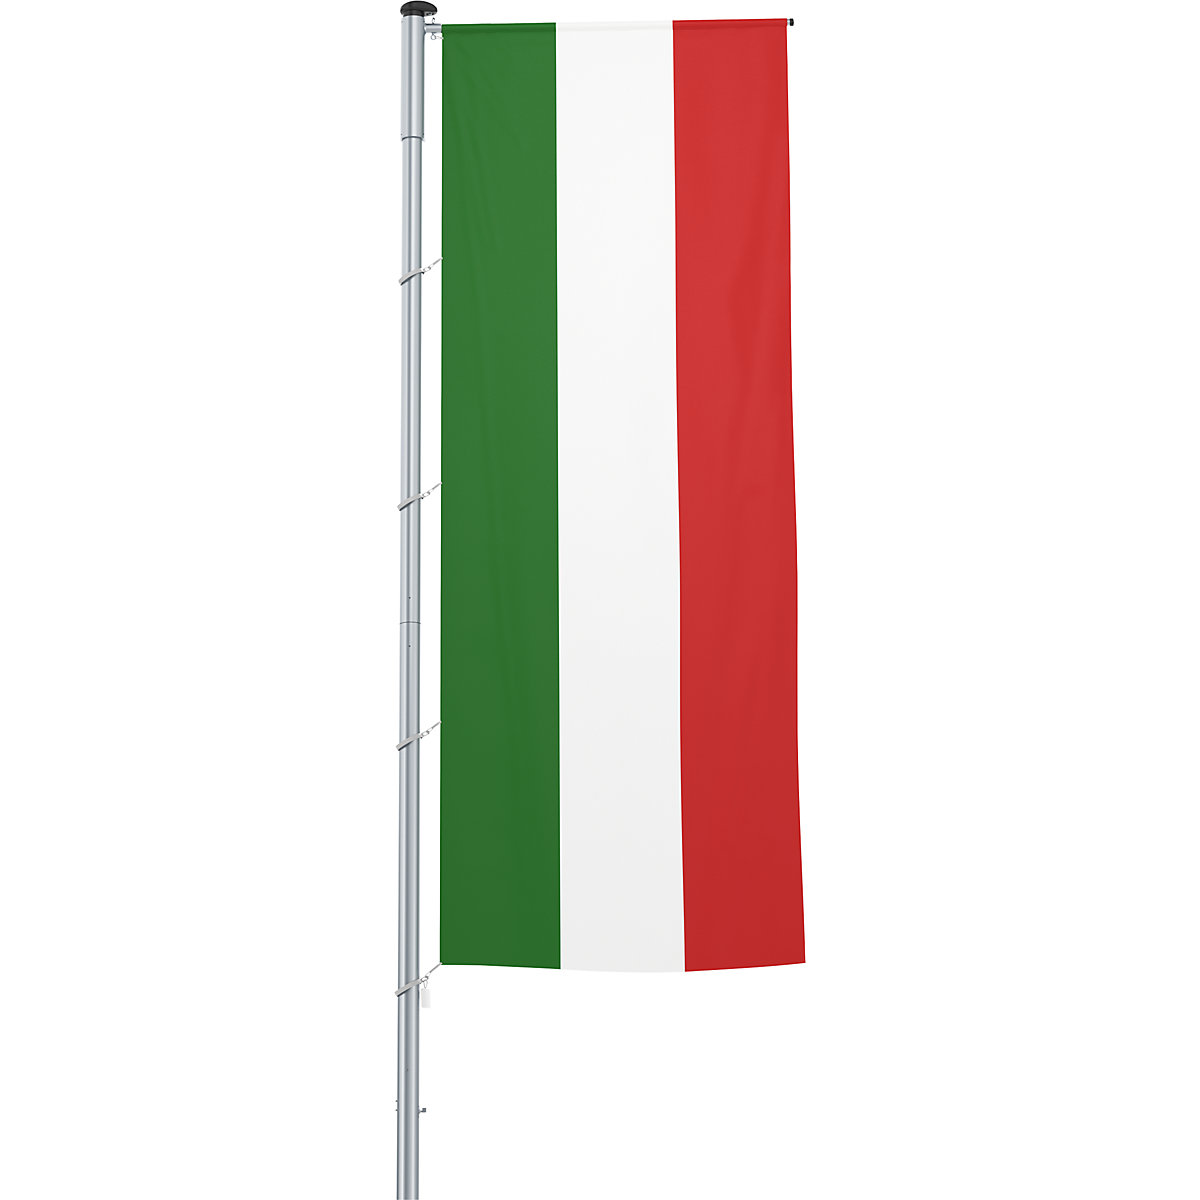 Mannus – Bandera con pluma/bandera del país, formato 1,2 x 3 m, Italia